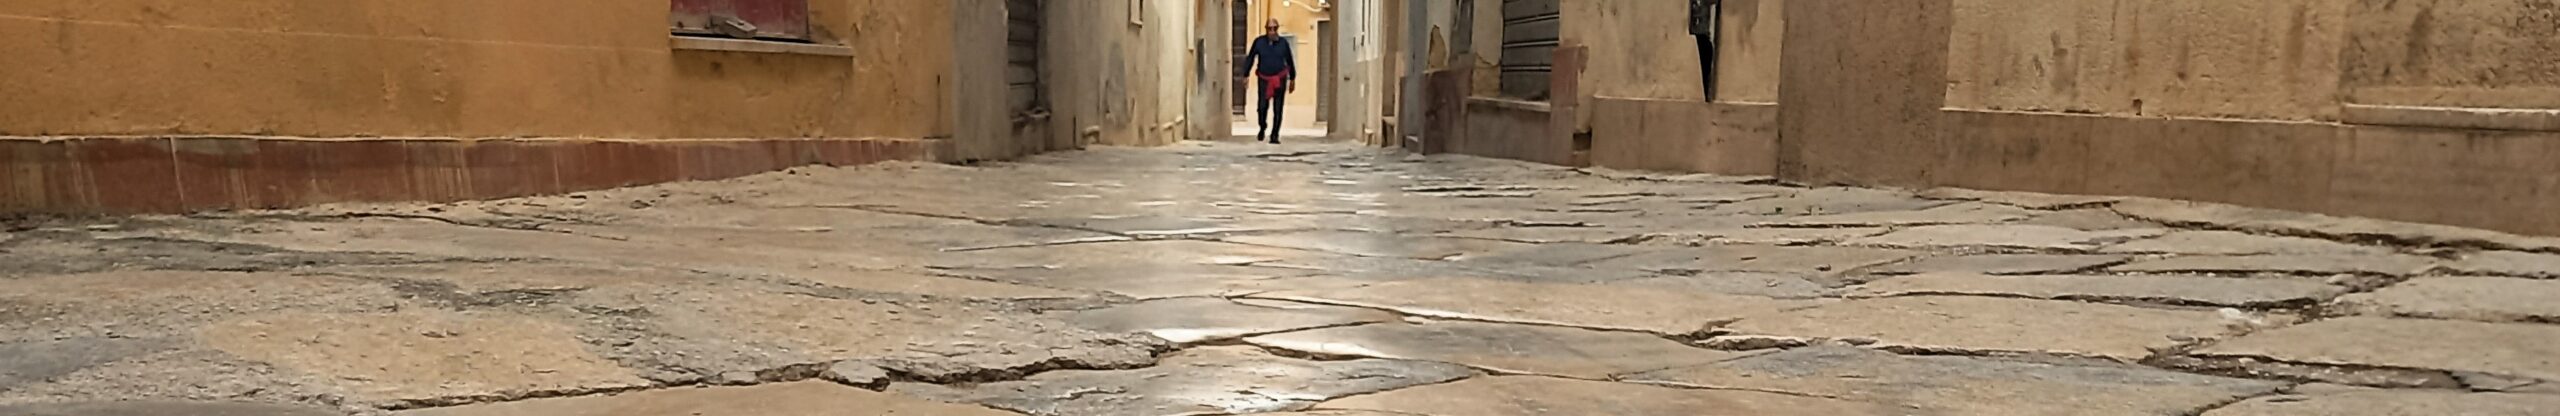 Mazara del Vallo Visionaria Sicily needs love 52 avere cura del passaggio